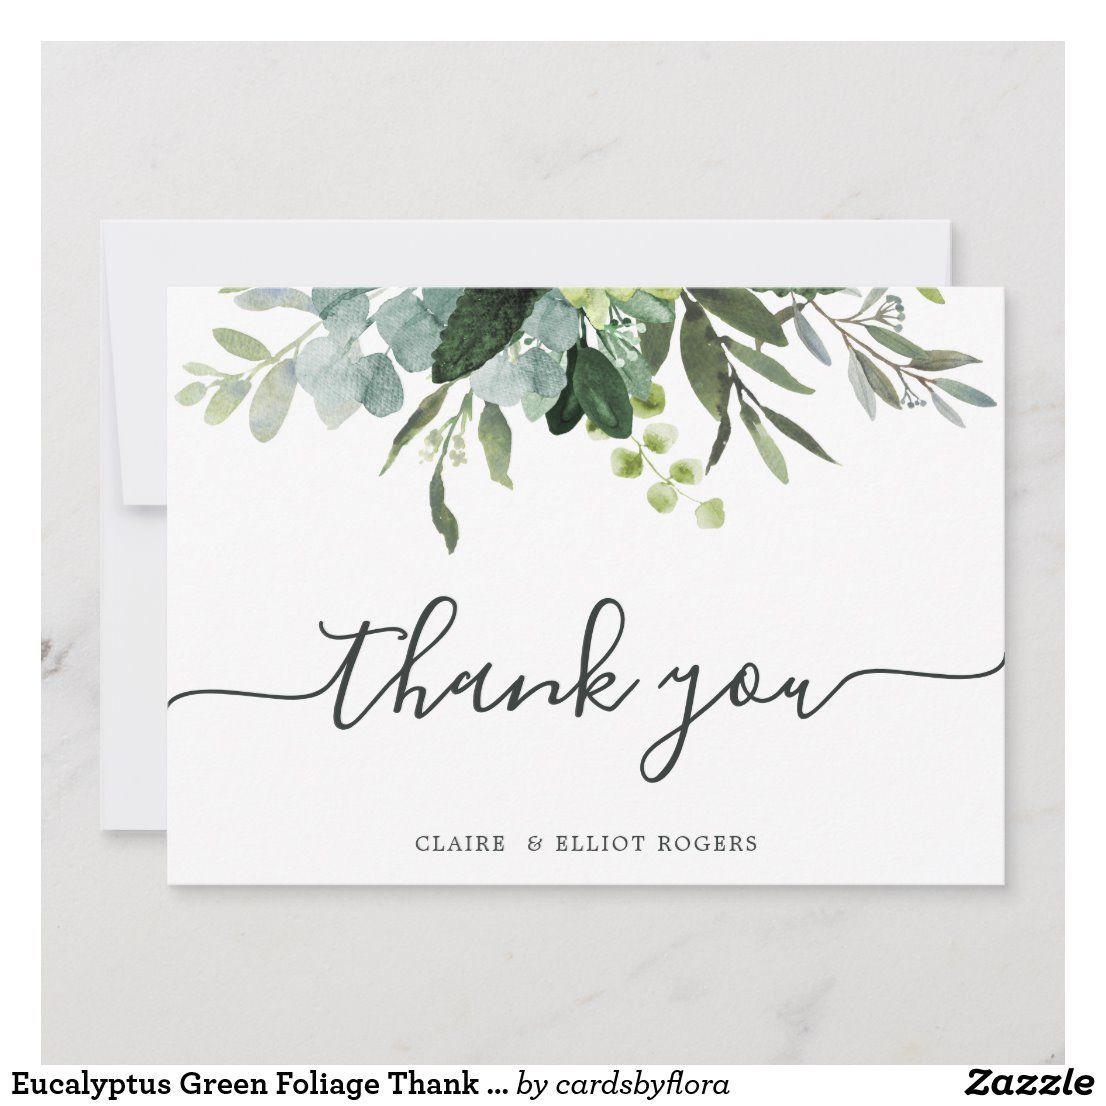 Eucalyptus Green Foliage Thank You Card | Zazzle.com -   15 wedding Card watercolor ideas